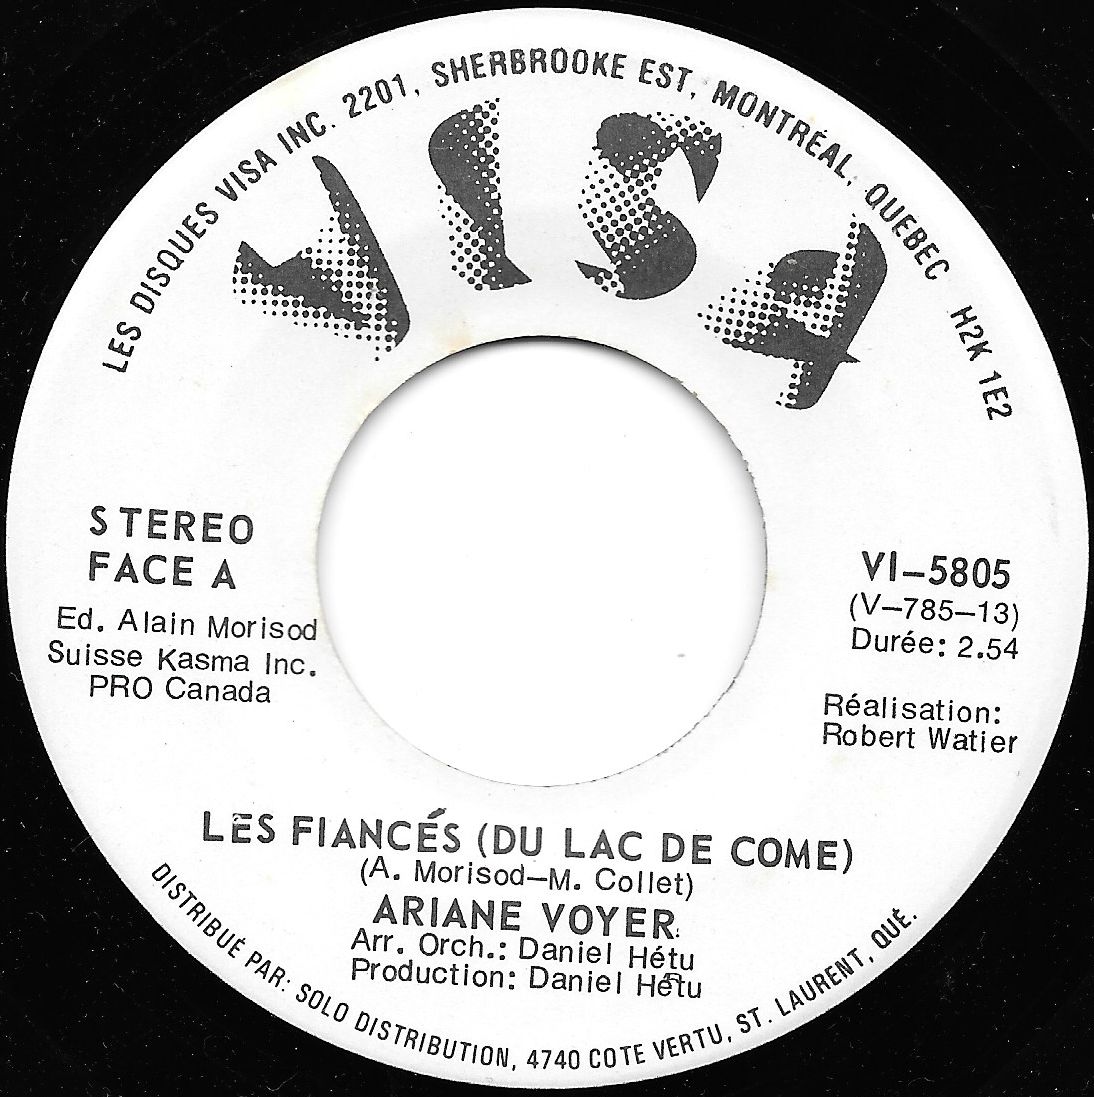 Acheter disque vinyle Ariane Voyer Les Fiancés (Du Lac De Come) / Poeme: Emile Nelligan a vendre